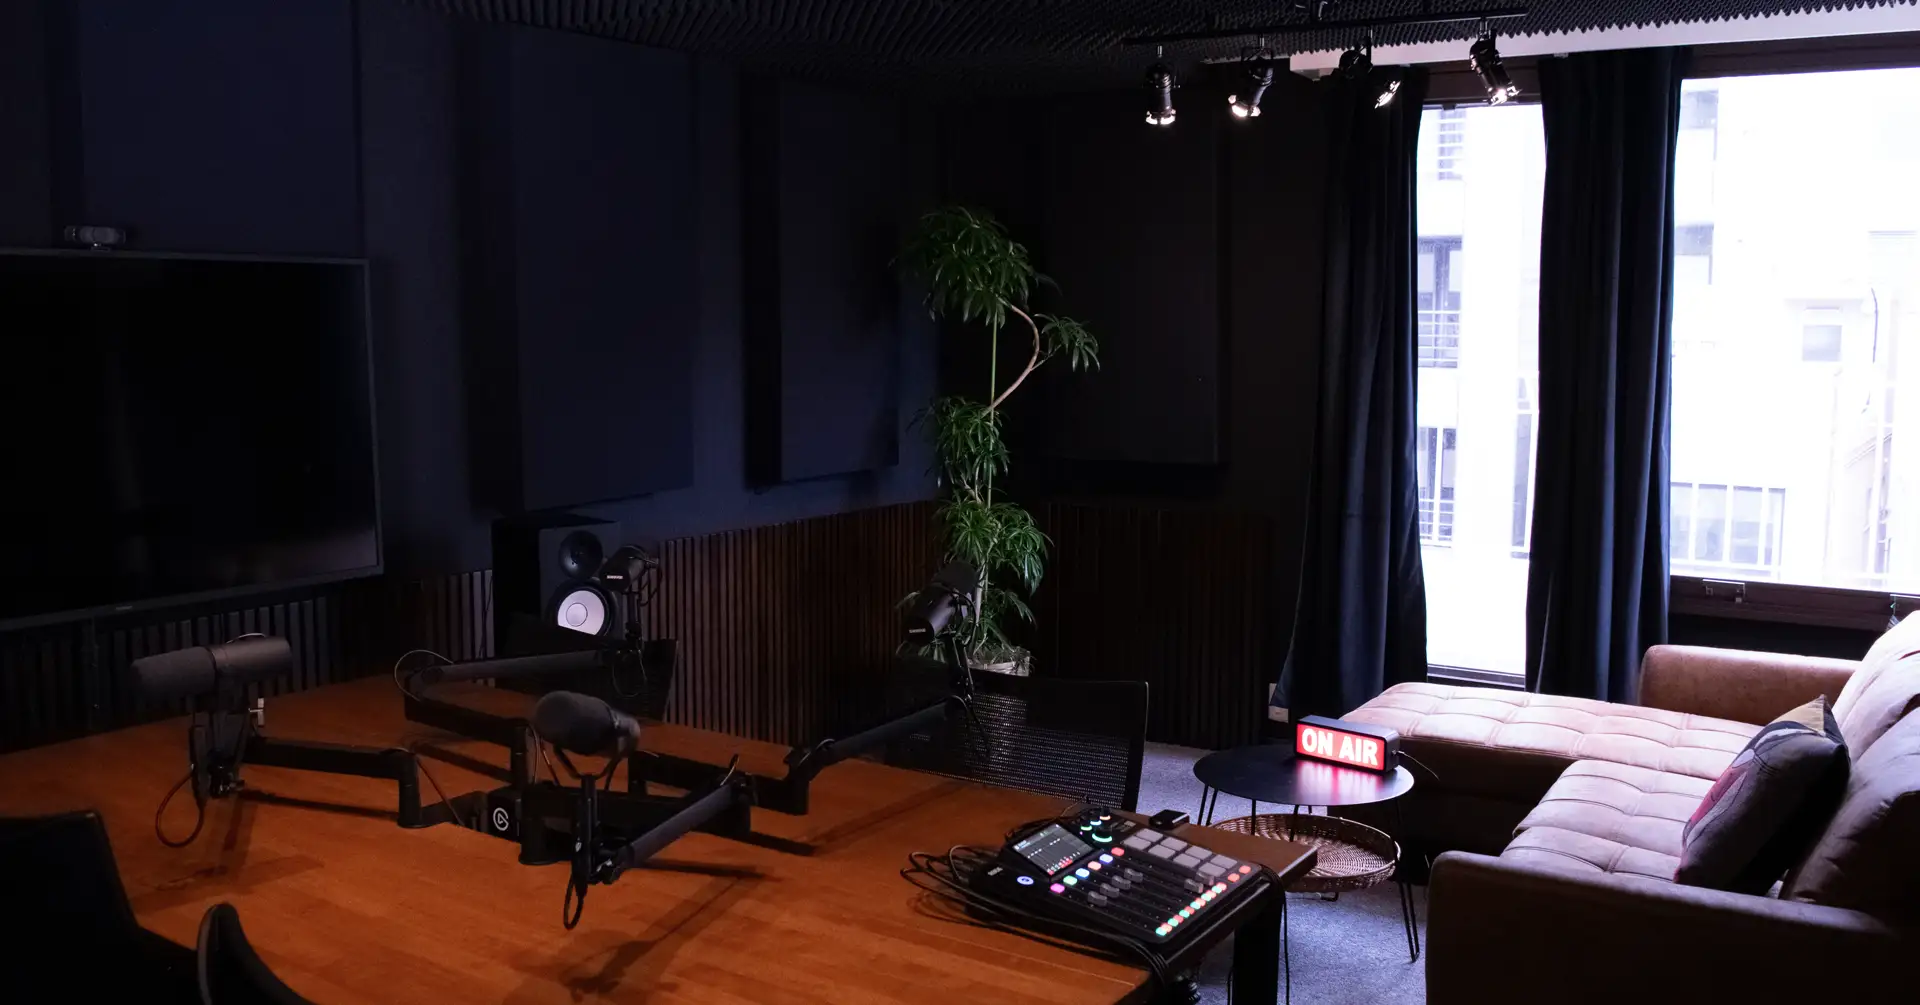 渋谷にポッドキャスト収録から配信まで行うスタジオ「FUBI STUDIO」がオープン